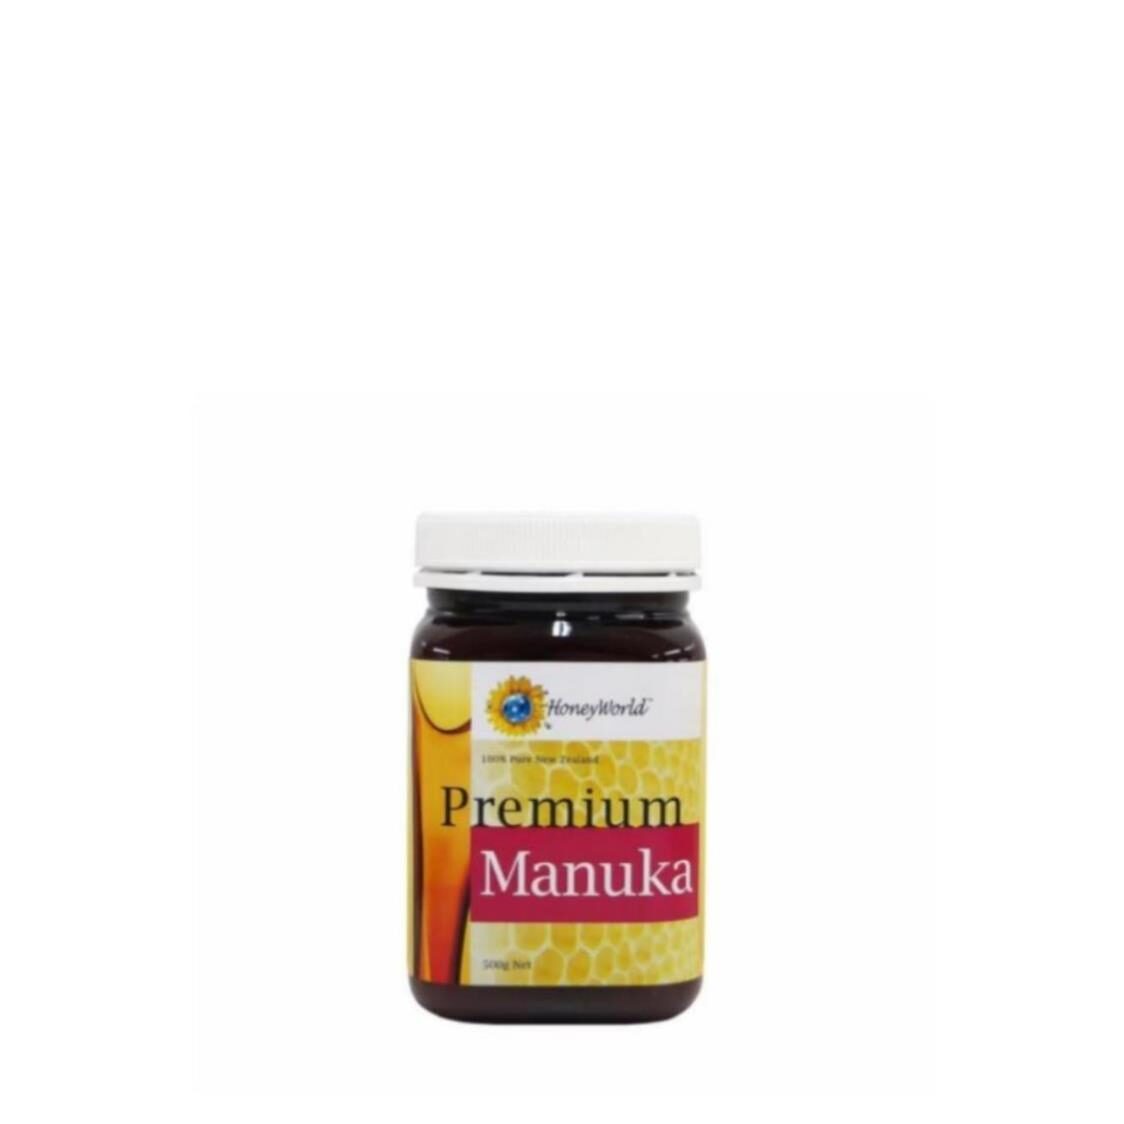 HoneyWorld Premium Manuka 500g